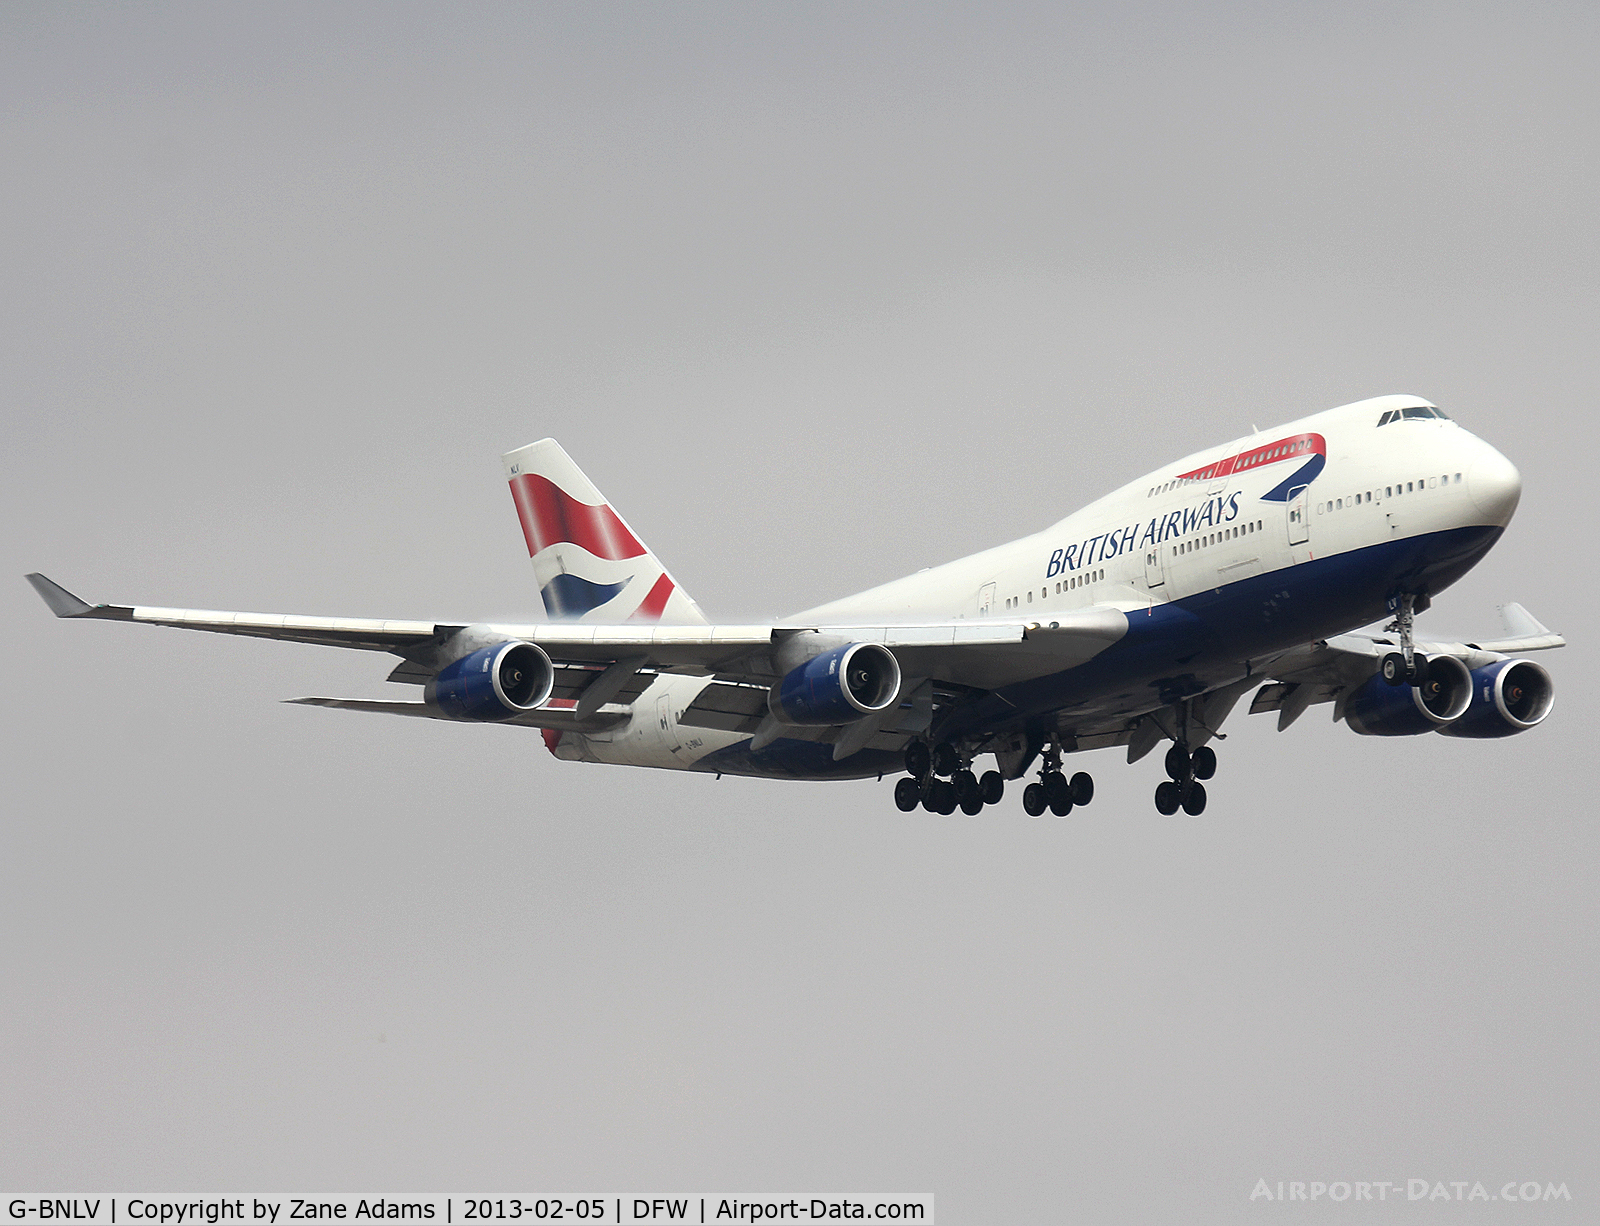 G-BNLV, 1992 Boeing 747-436 C/N 25427, British Airways arriving at DFW Airport